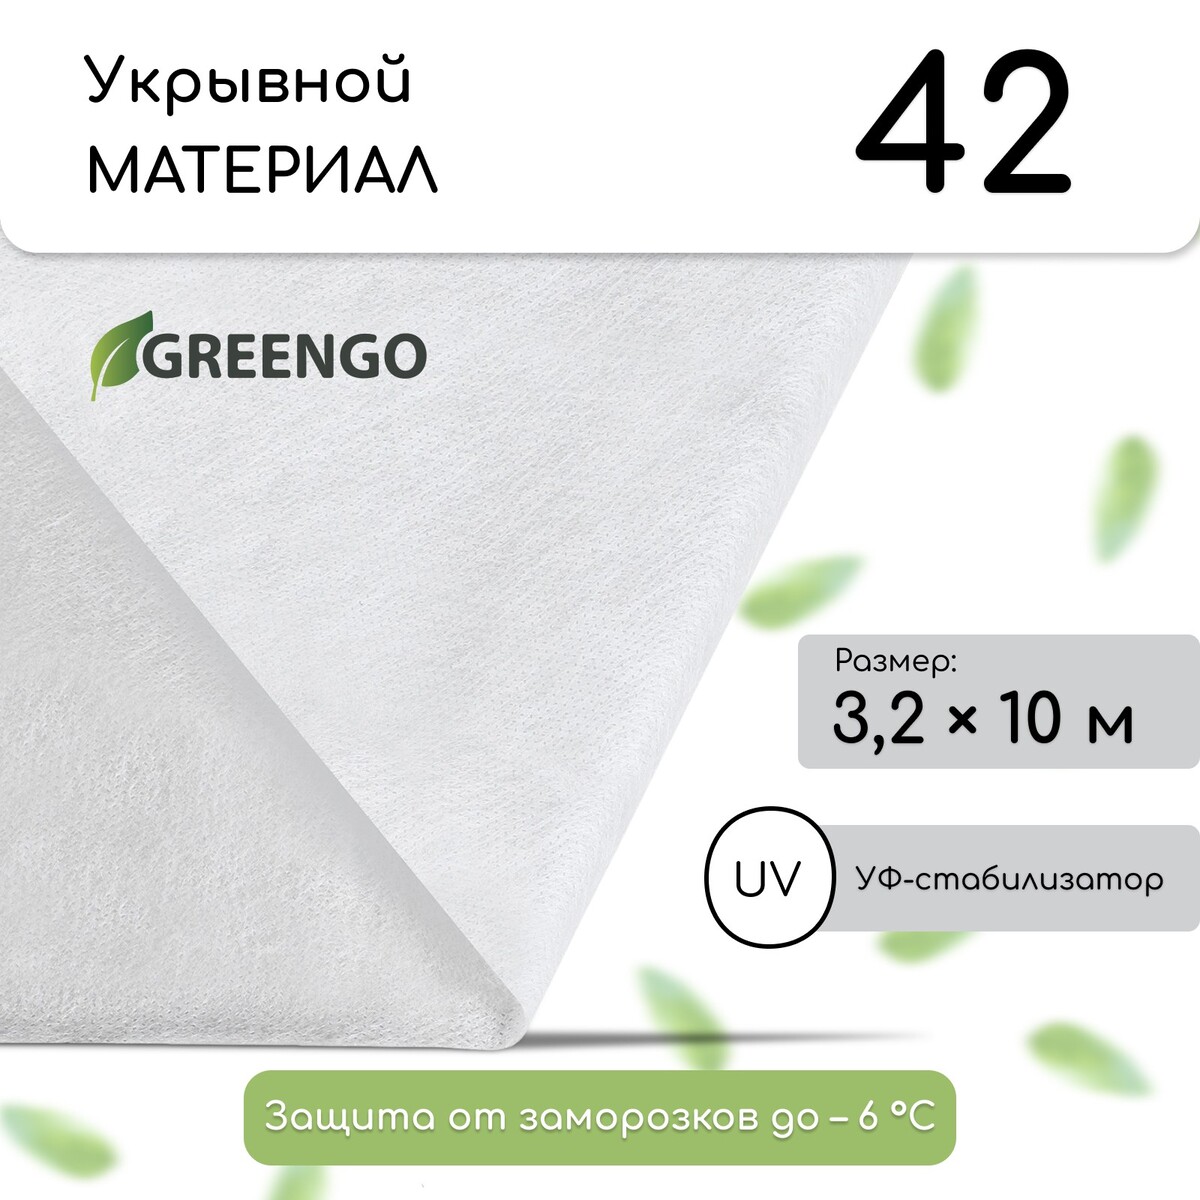 Материал укрывной, 10 × 3,2 м, плотность 42 г/м², спанбонд с уф-стабилизатором, белый, greengo, эконом 30%